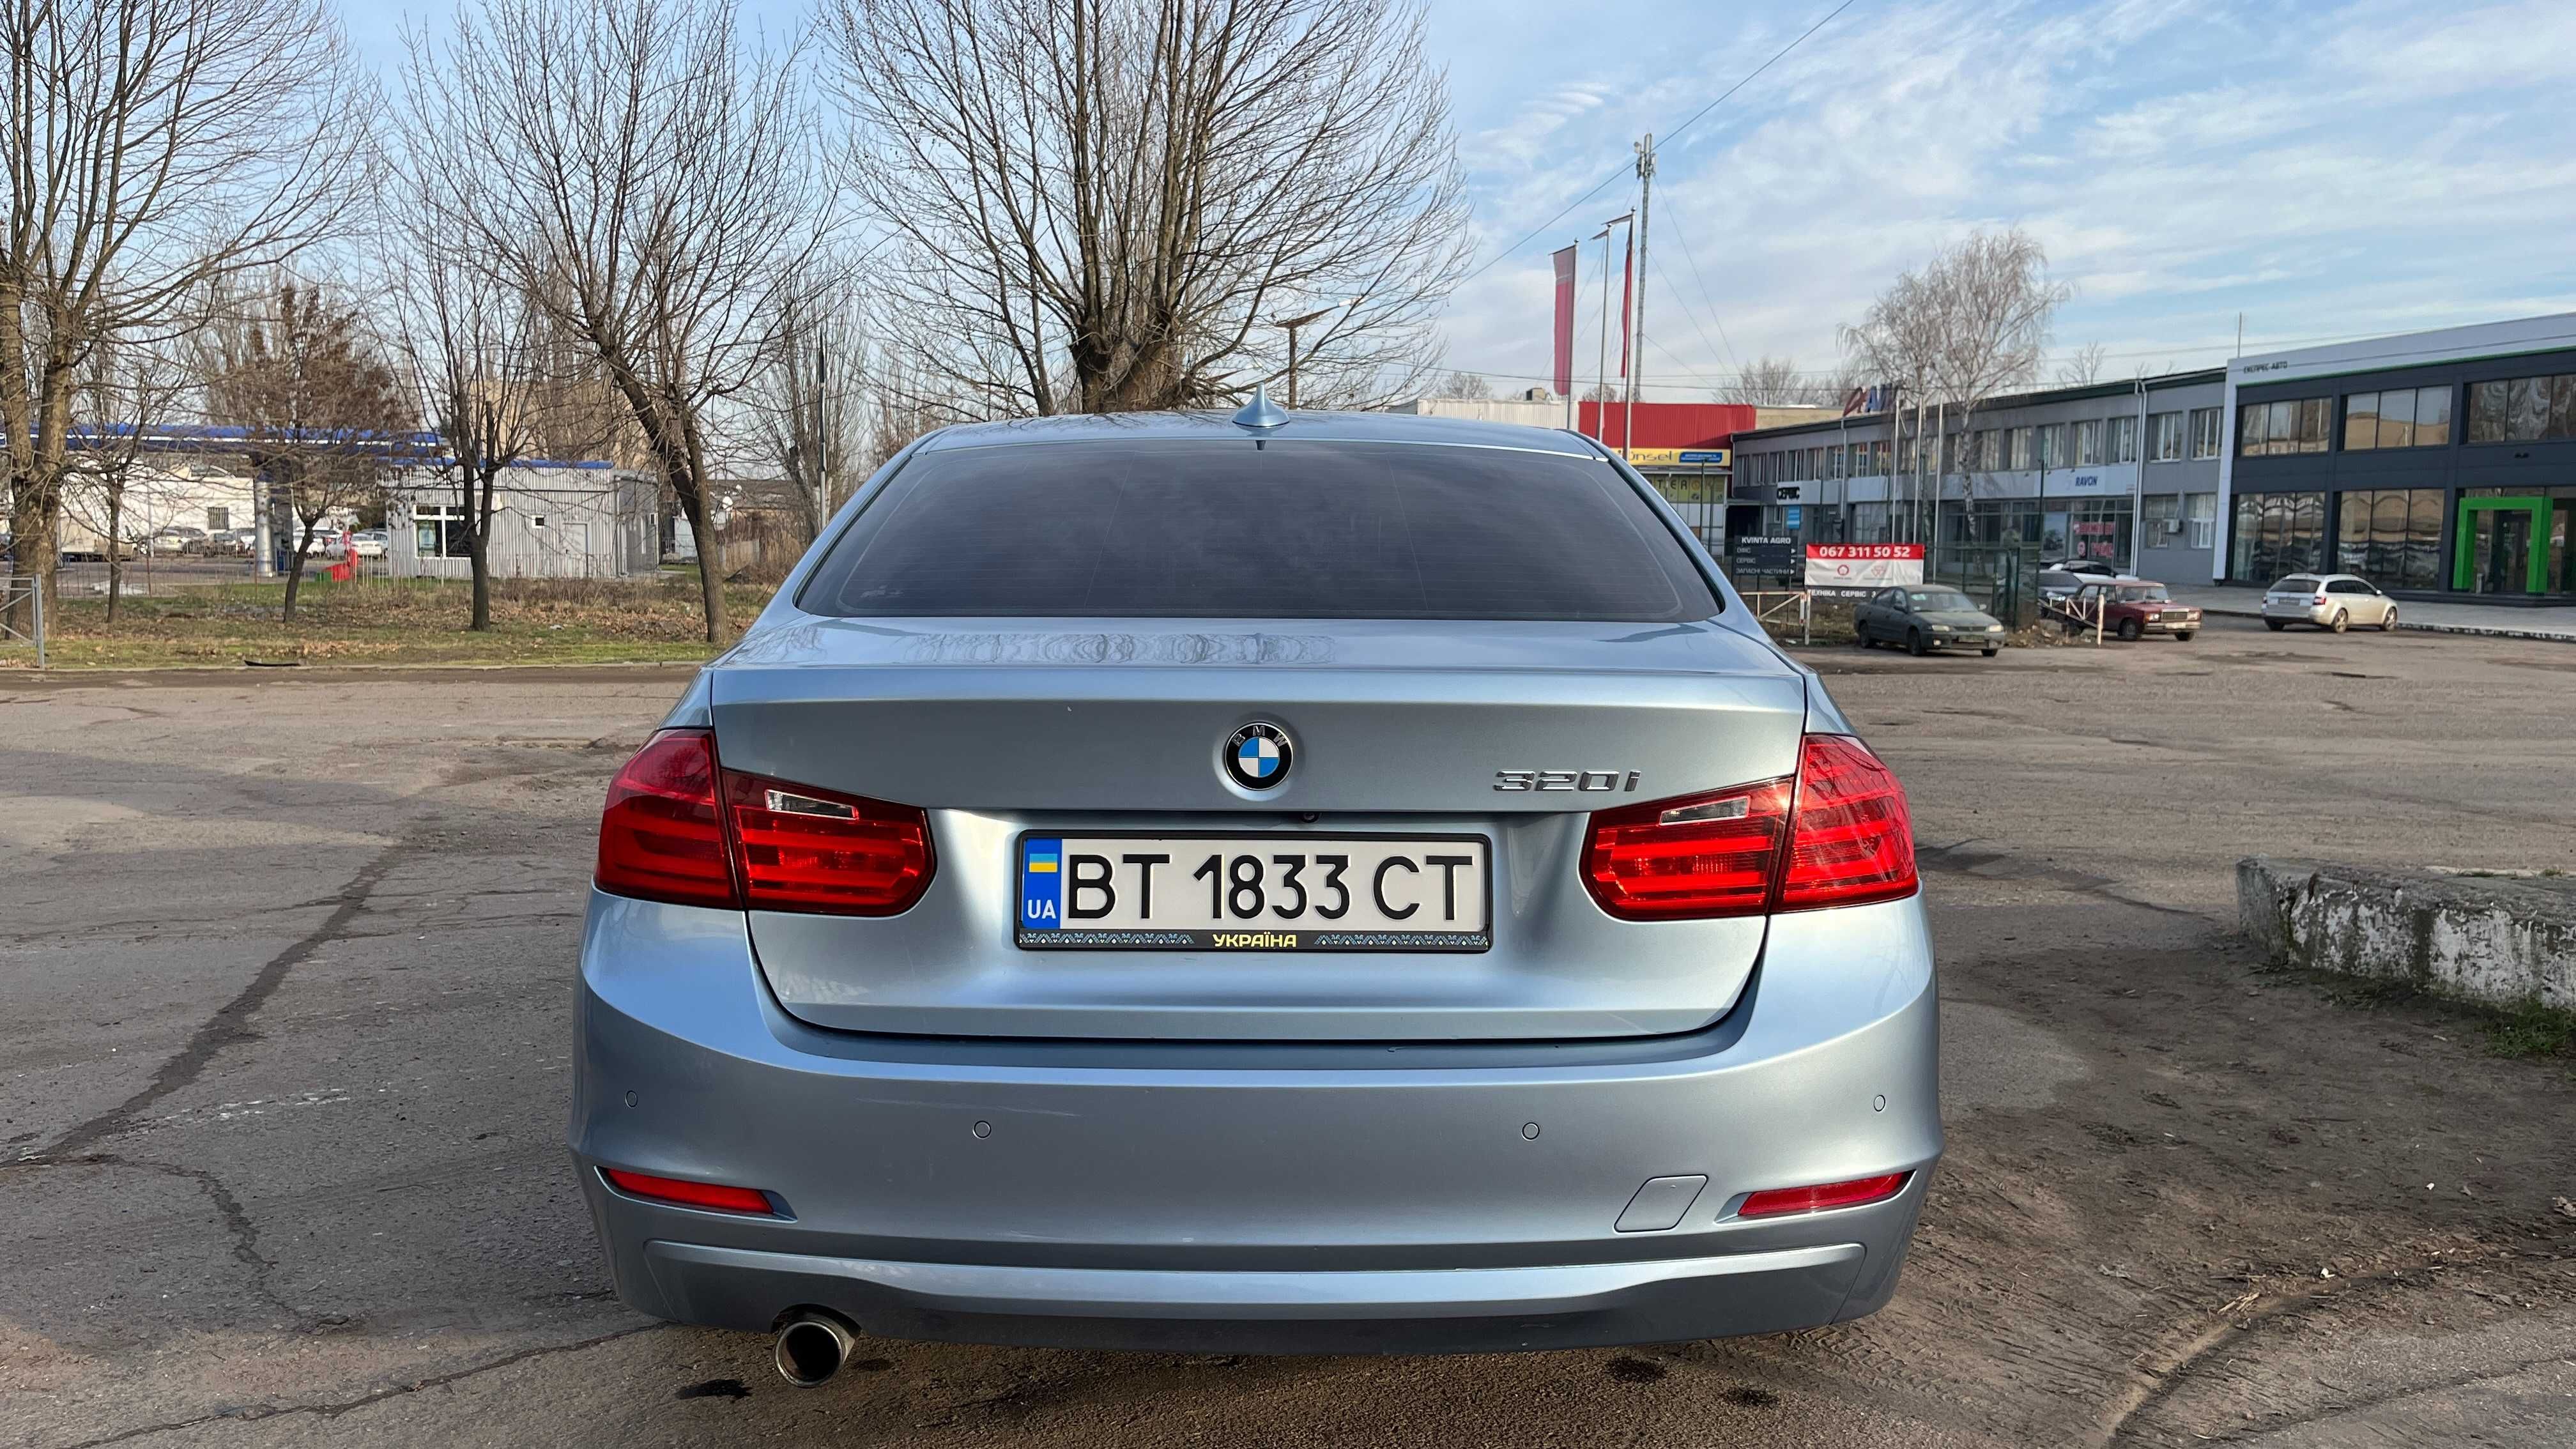 Продам автомобіль BMW 320 i , 2015 г. 13700 у.е.